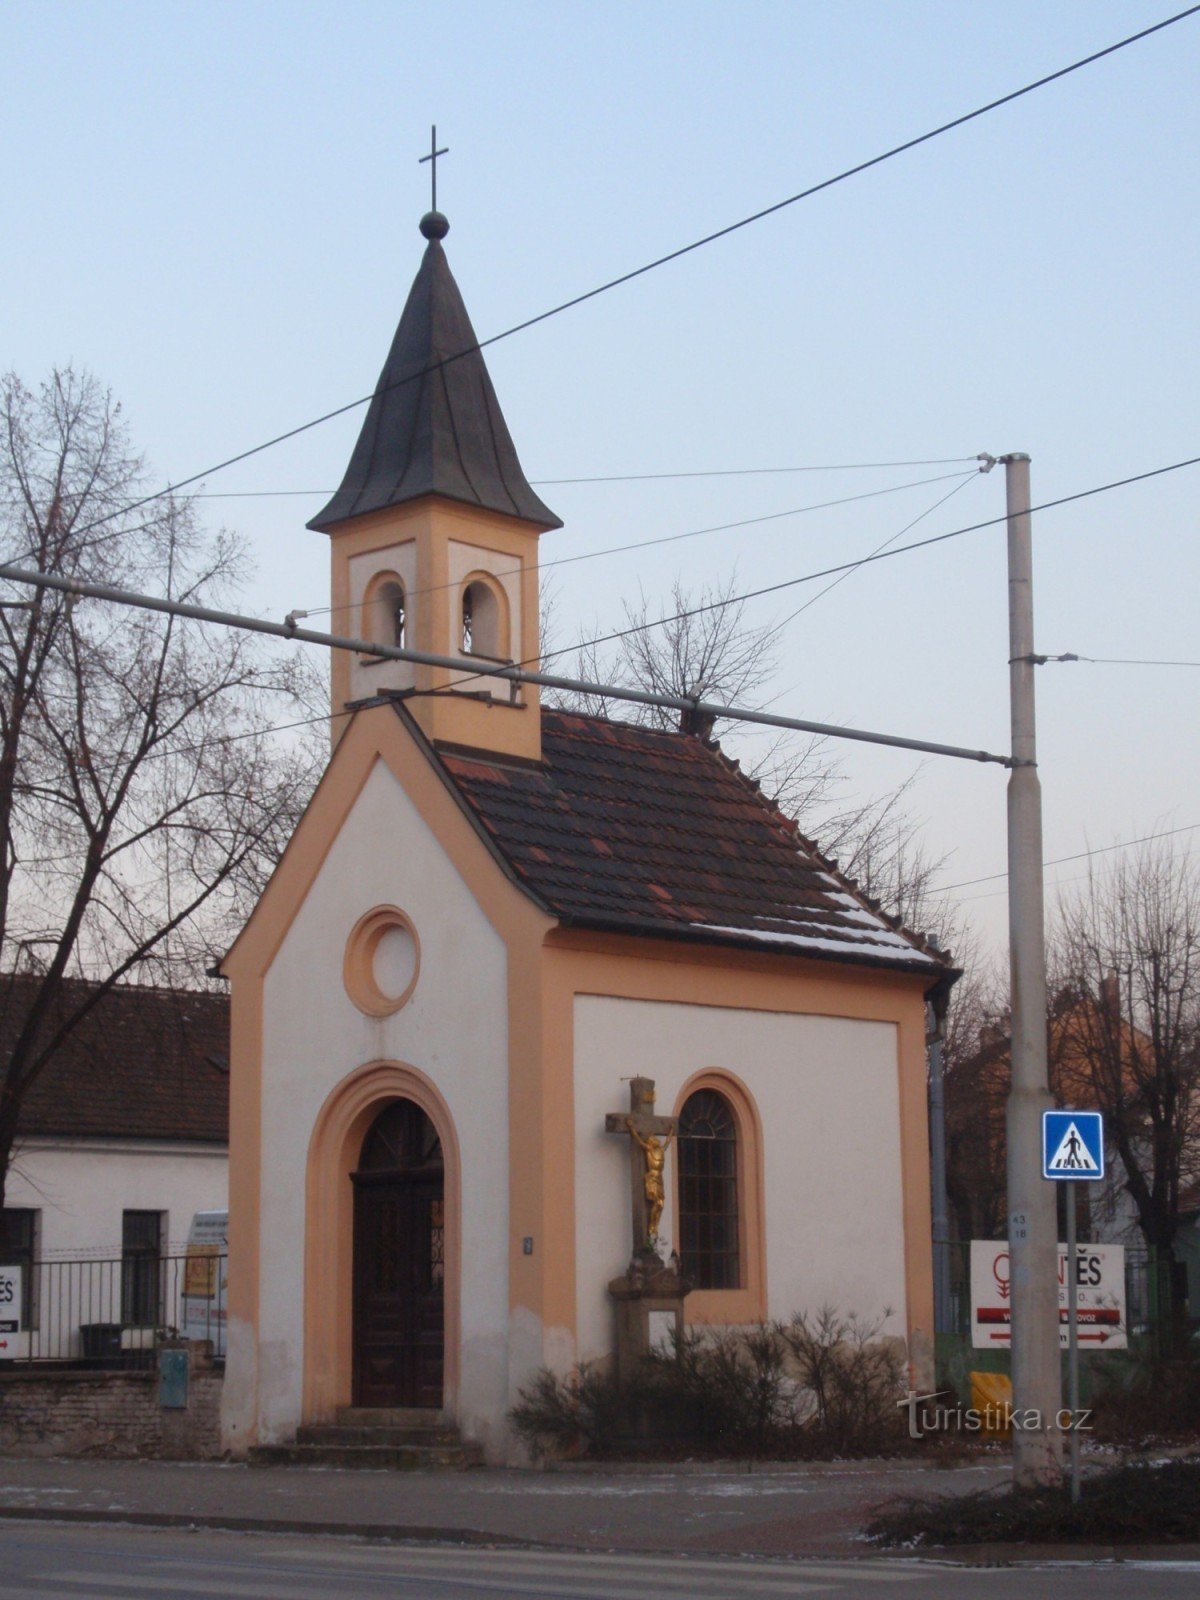 Kapelle St. Františka in Brünn-Židenice